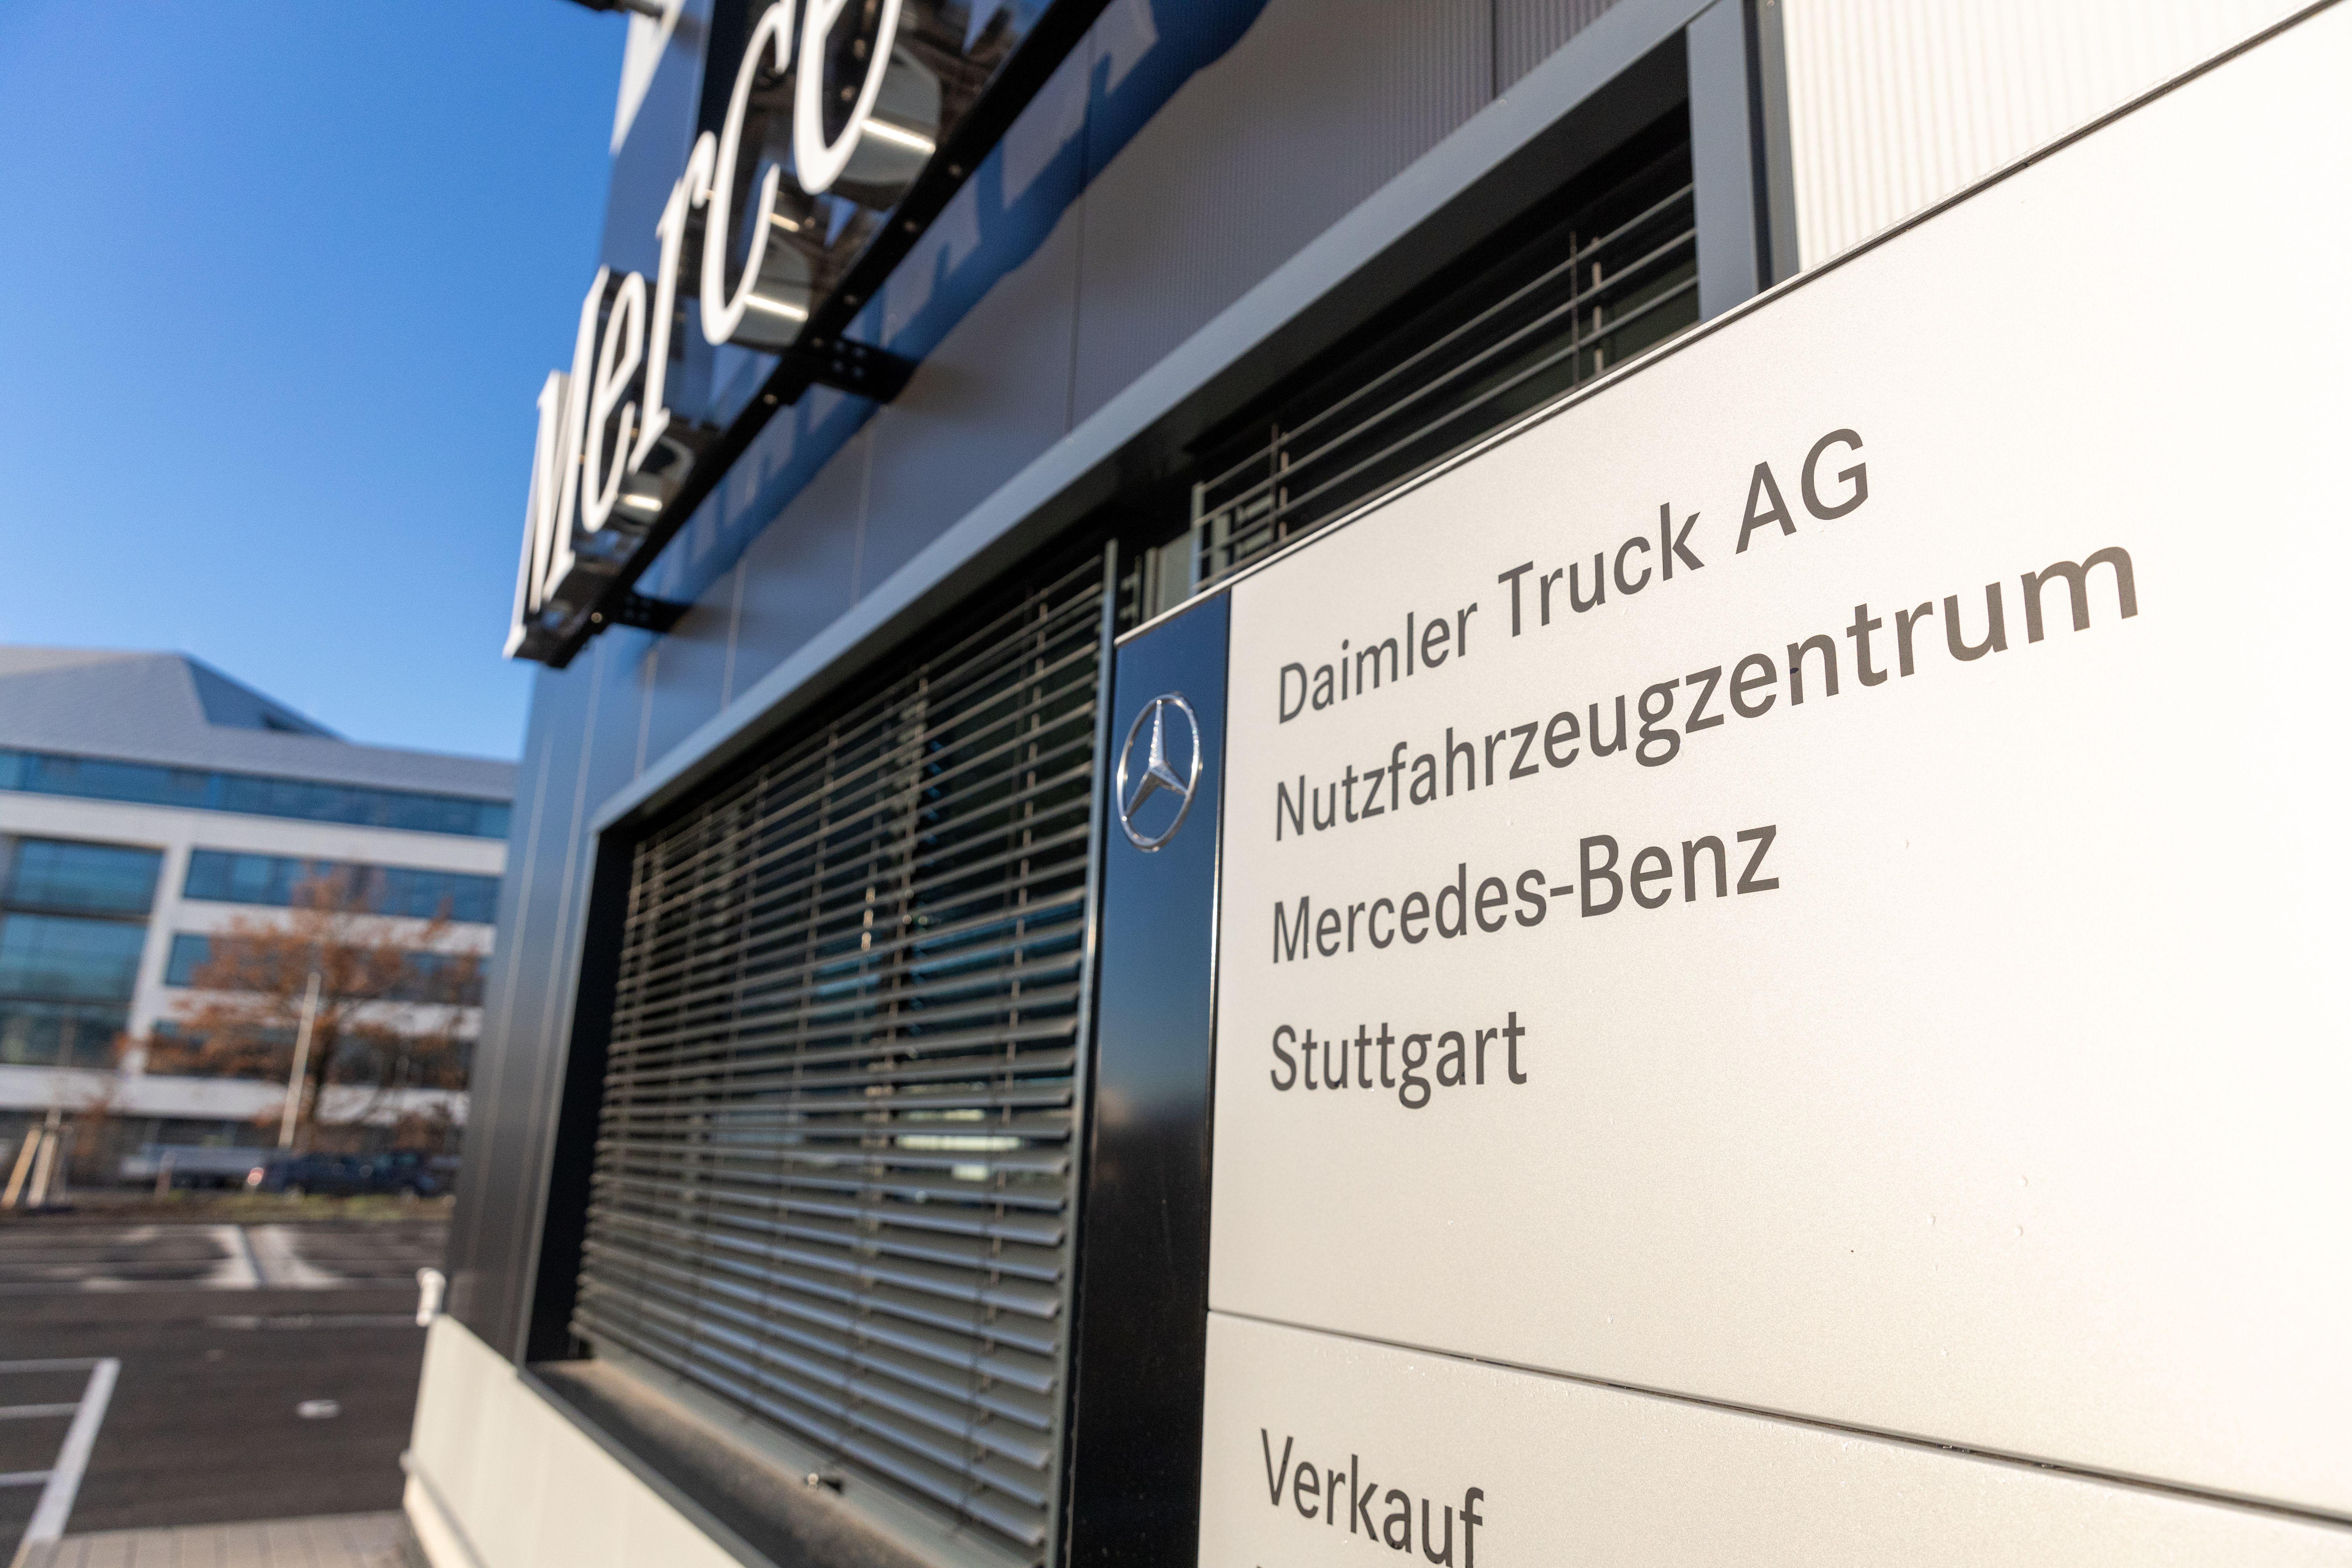 Kundenfoto 1 Daimler Truck AG - Nutzfahrzeugzentrum Mercedes-Benz Stuttgart